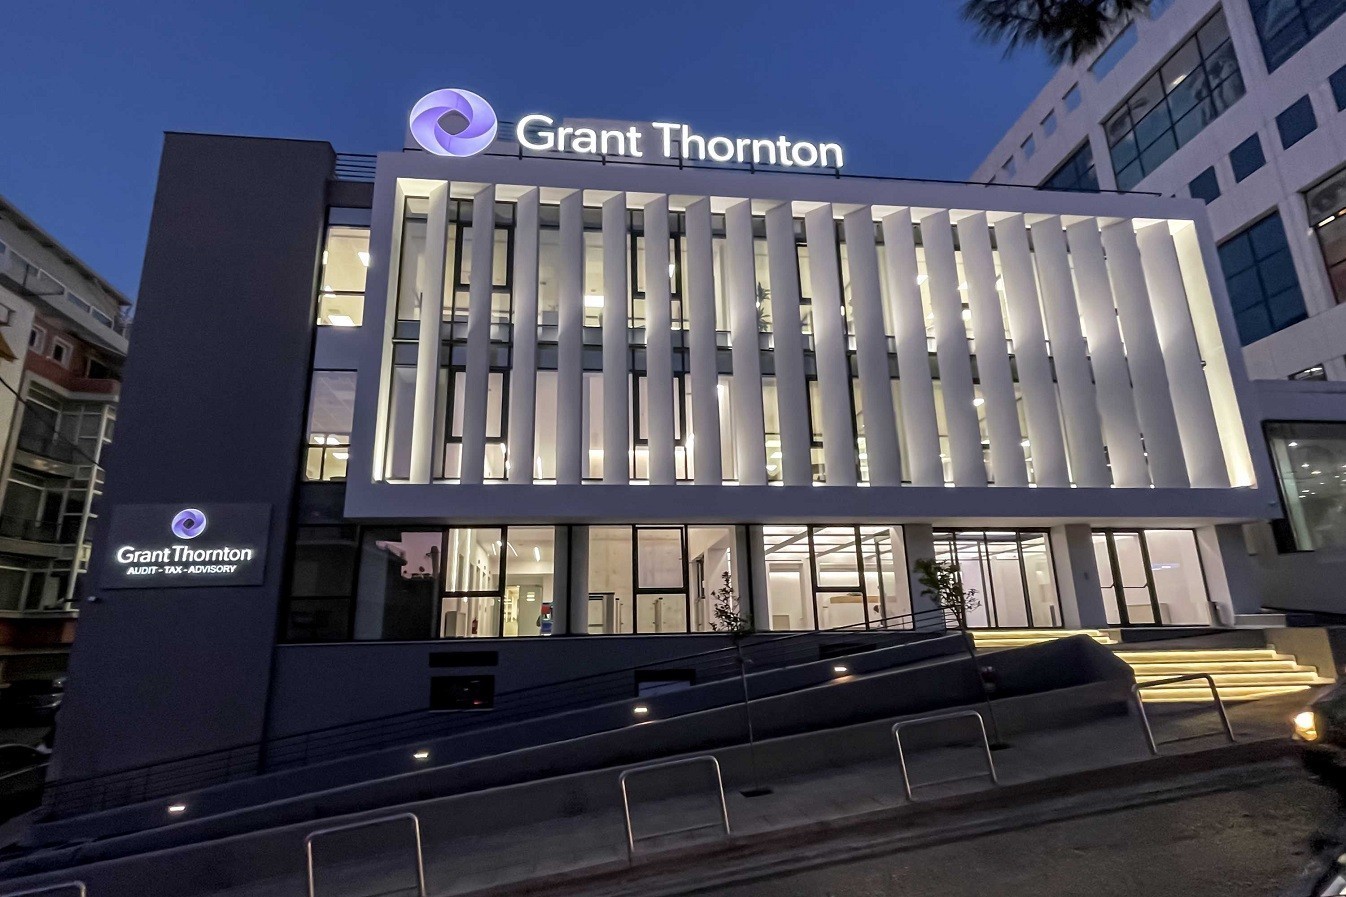 Η Grant Thornton παρούσα για μία ακόμη χρονιά στο Οικονομικό Φόρουμ των Δελφών